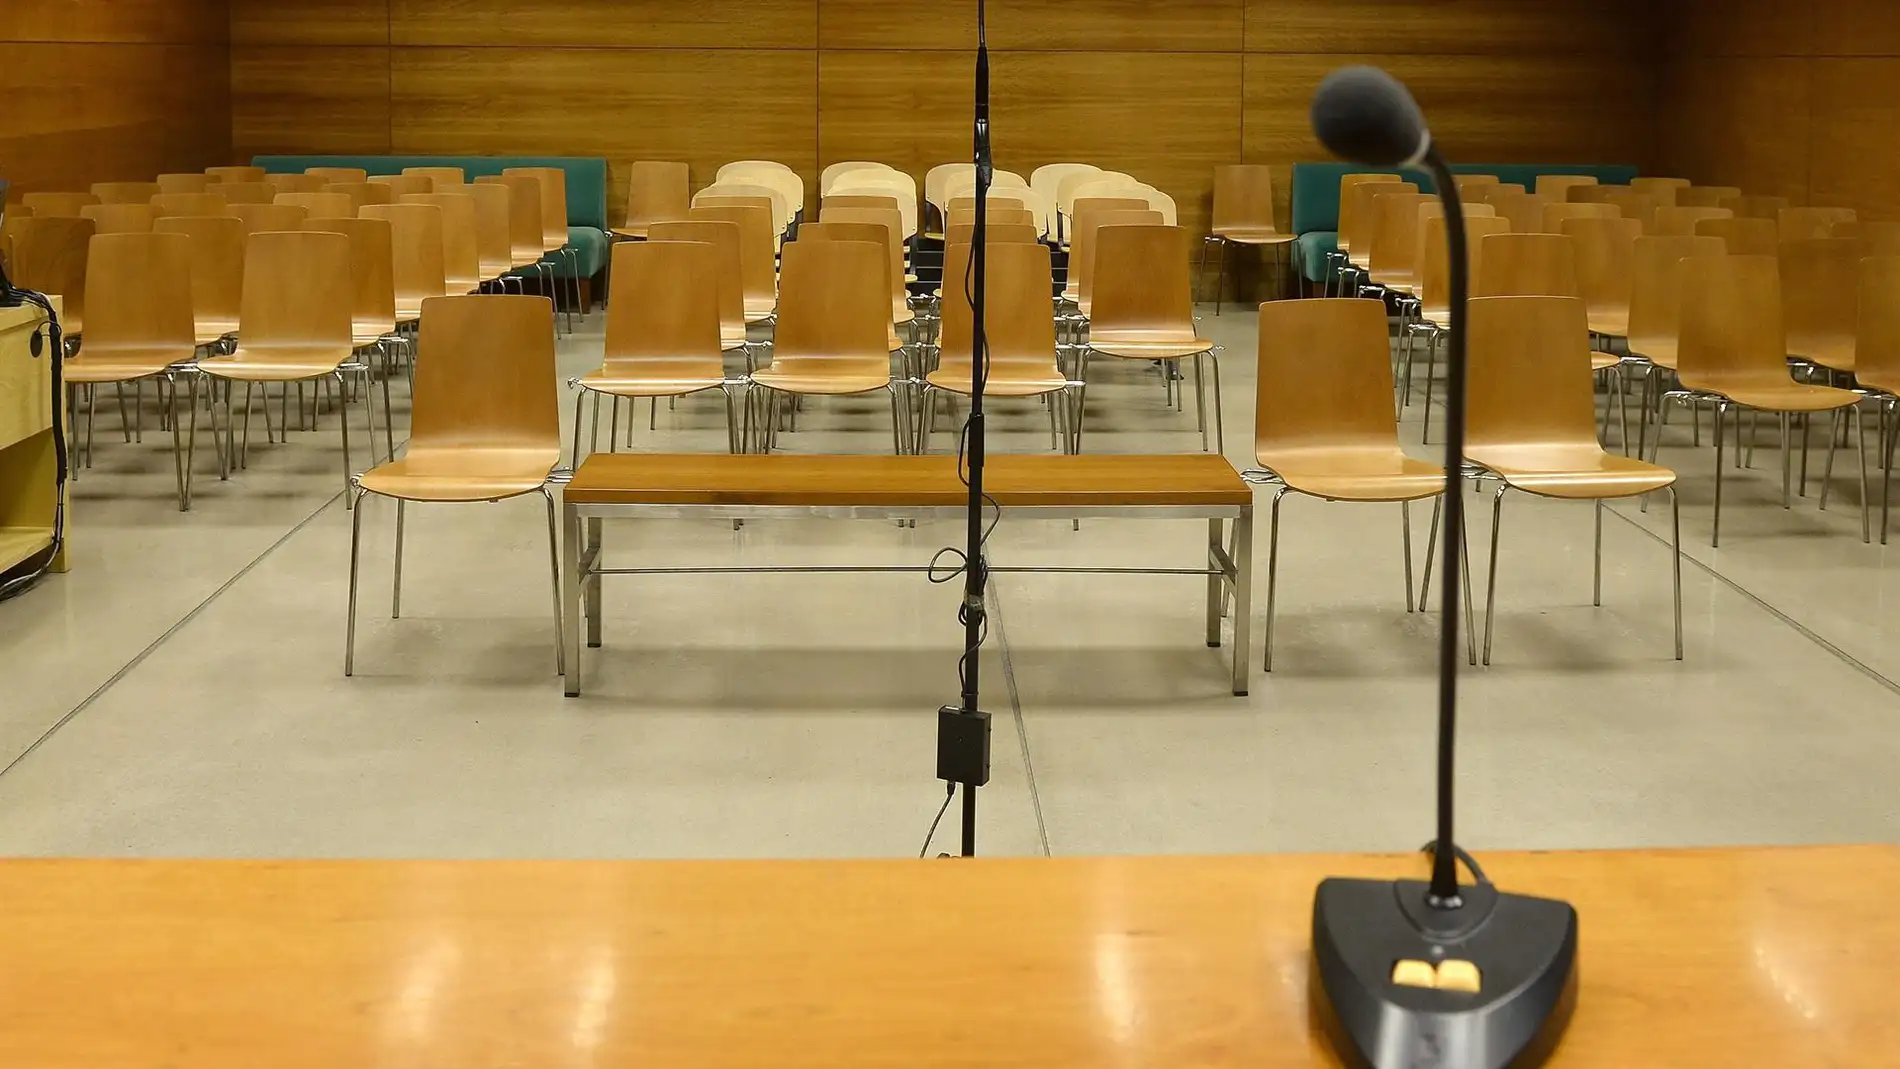 Alberto Luceño ofrece al juez durante su declaración dos relojes Rolex para rebajar su fianza